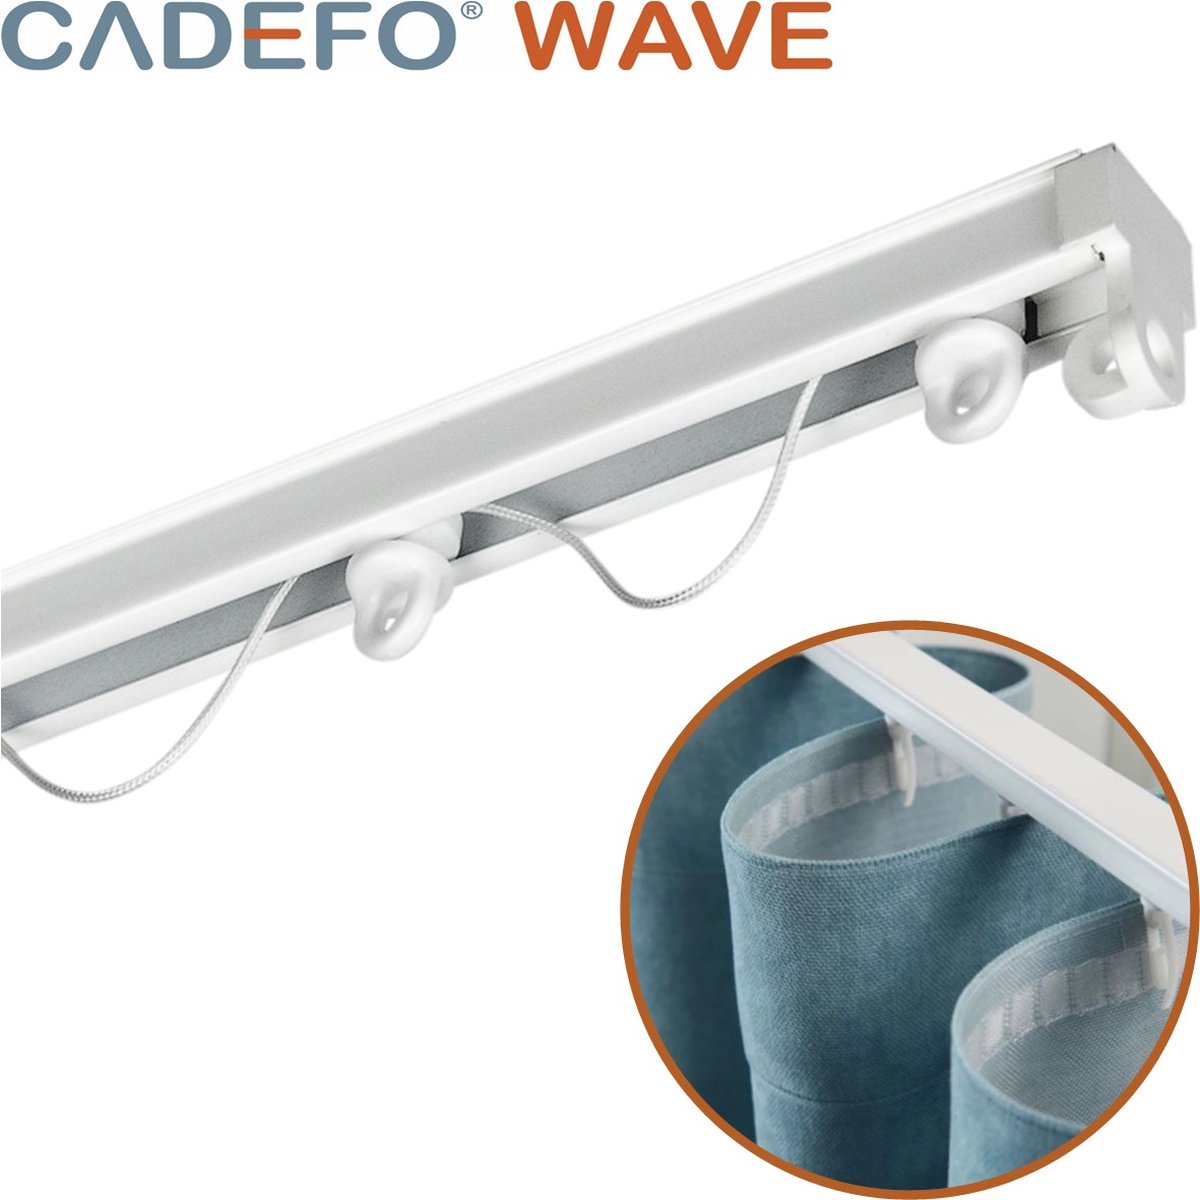 CADEFO WAVE (451 - 500 cm) Gordijnrails - Compleet op maat! - UIT 1 STUK - Leverbaar tot 6 meter - Plafondbevestiging - Lengte 453 cm